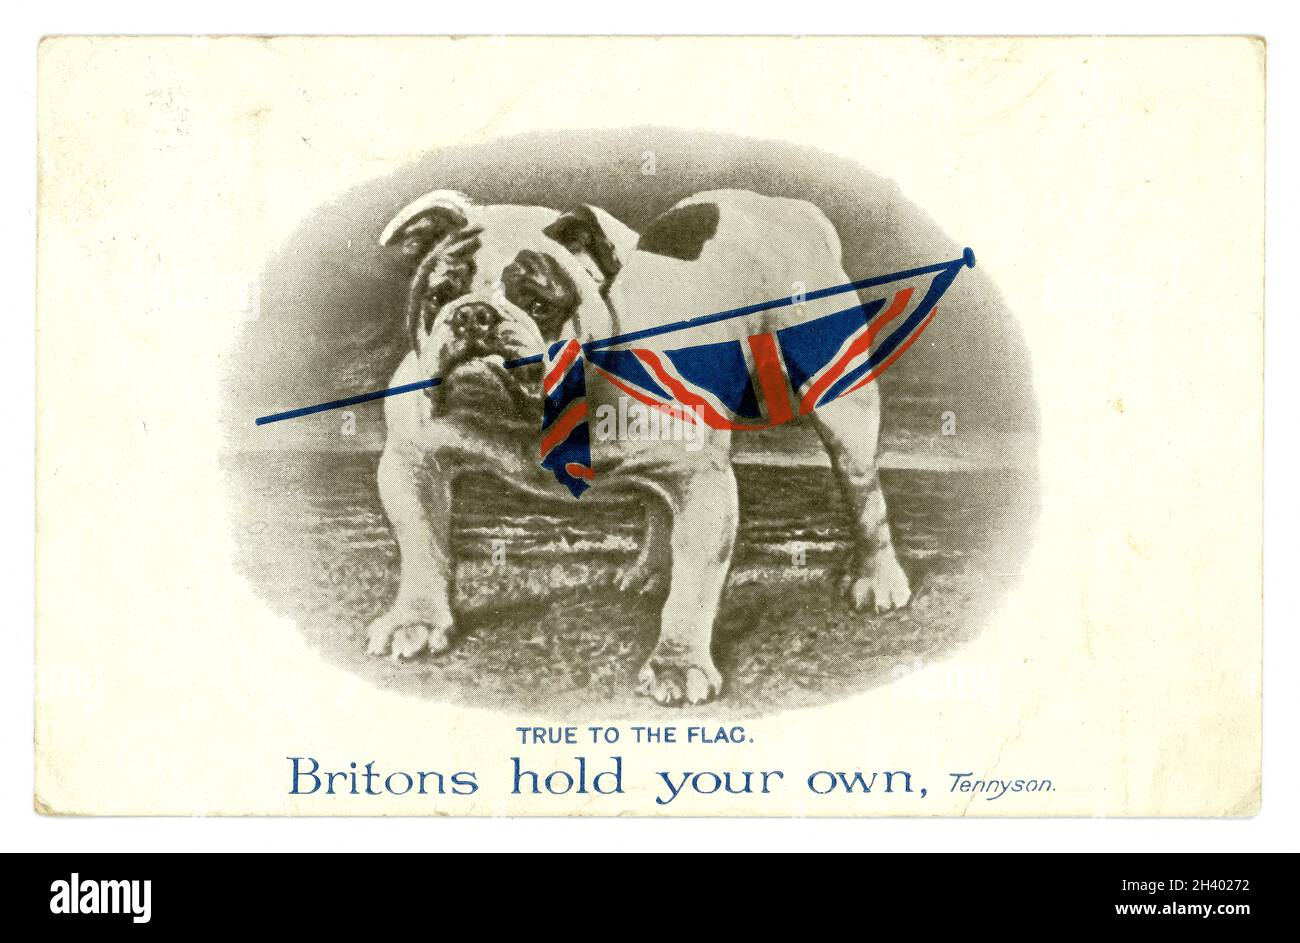 Cartolina originale dell'era WW1 del bulldog che tiene una bandiera del Jack dell'Unione, allineare alla bandiera, la citazione del Tennyson i Britannici tengono il vostro proprio, da C.W. Faulkner & Co.Ltd London serie 1458, postato 1914. Foto Stock